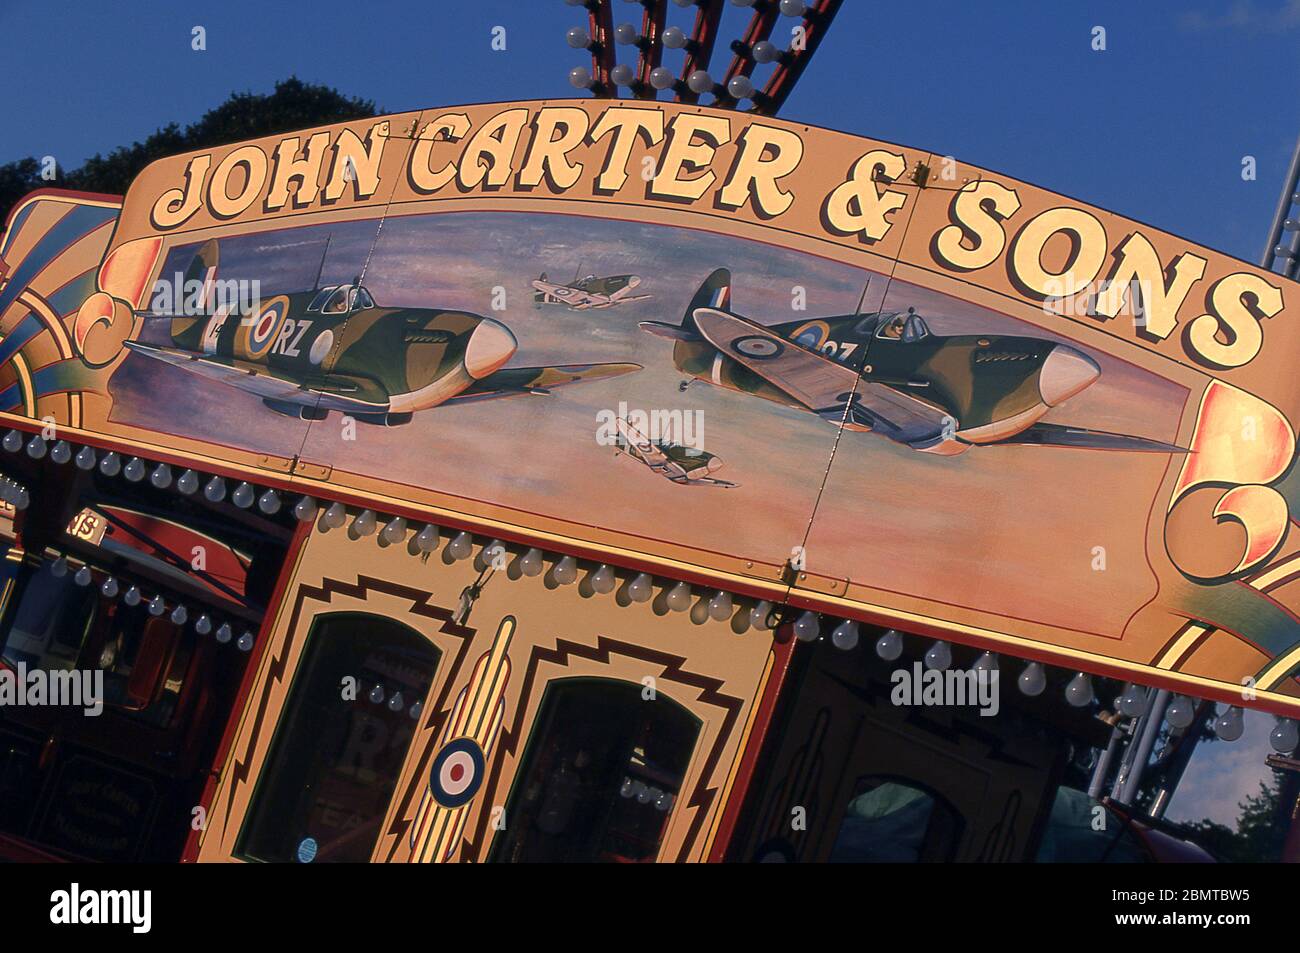 Vintage fun fair art at John Carter & Sons Steam fair Stock Photo